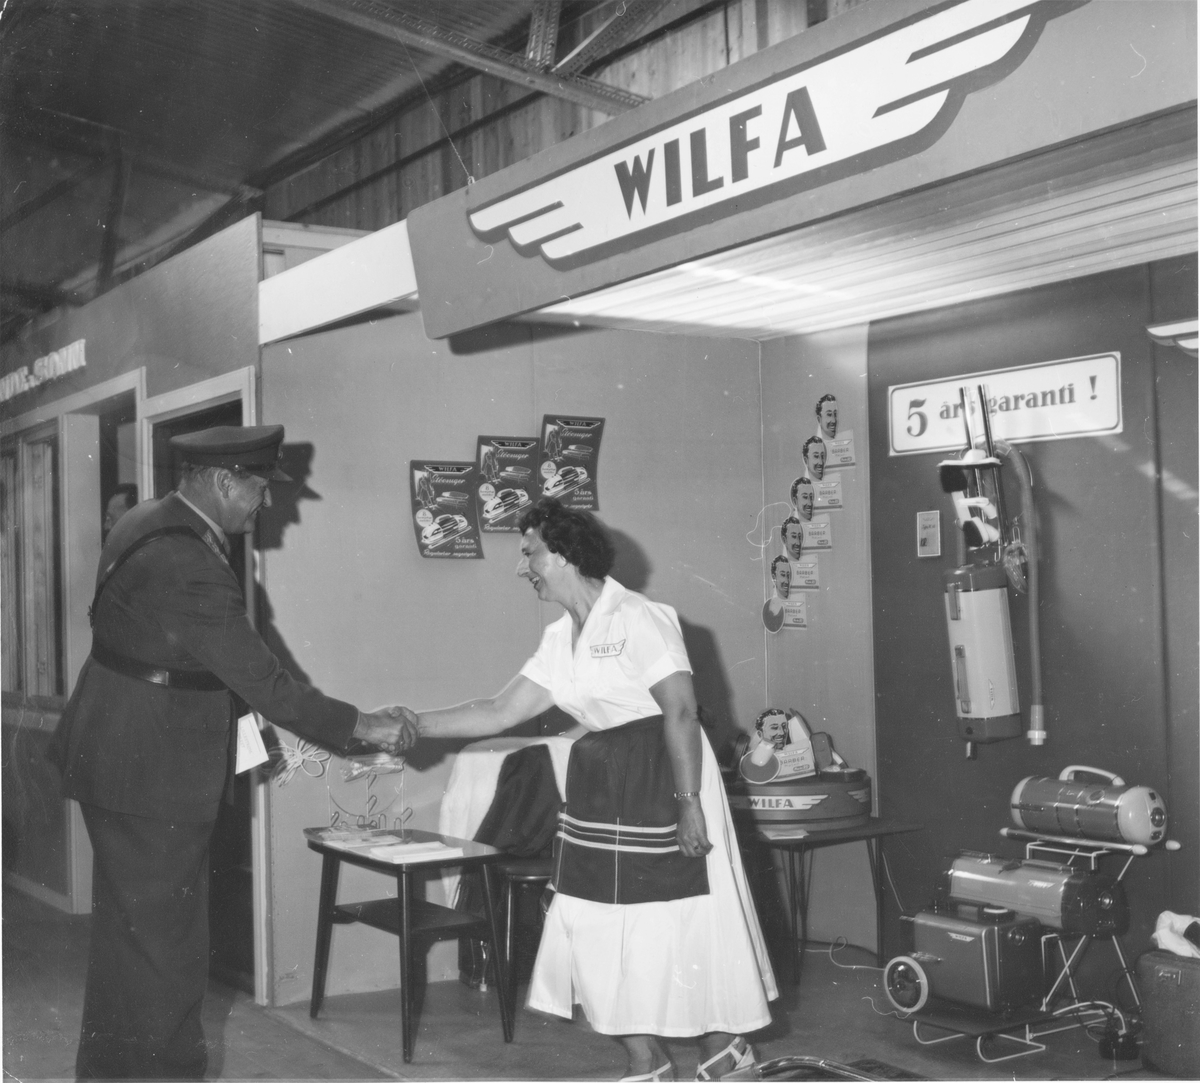 Kong Olav hilser på en dame som står på Wilfa sin stand i forbindelse med en firmautstilling / varerepresentasjon.